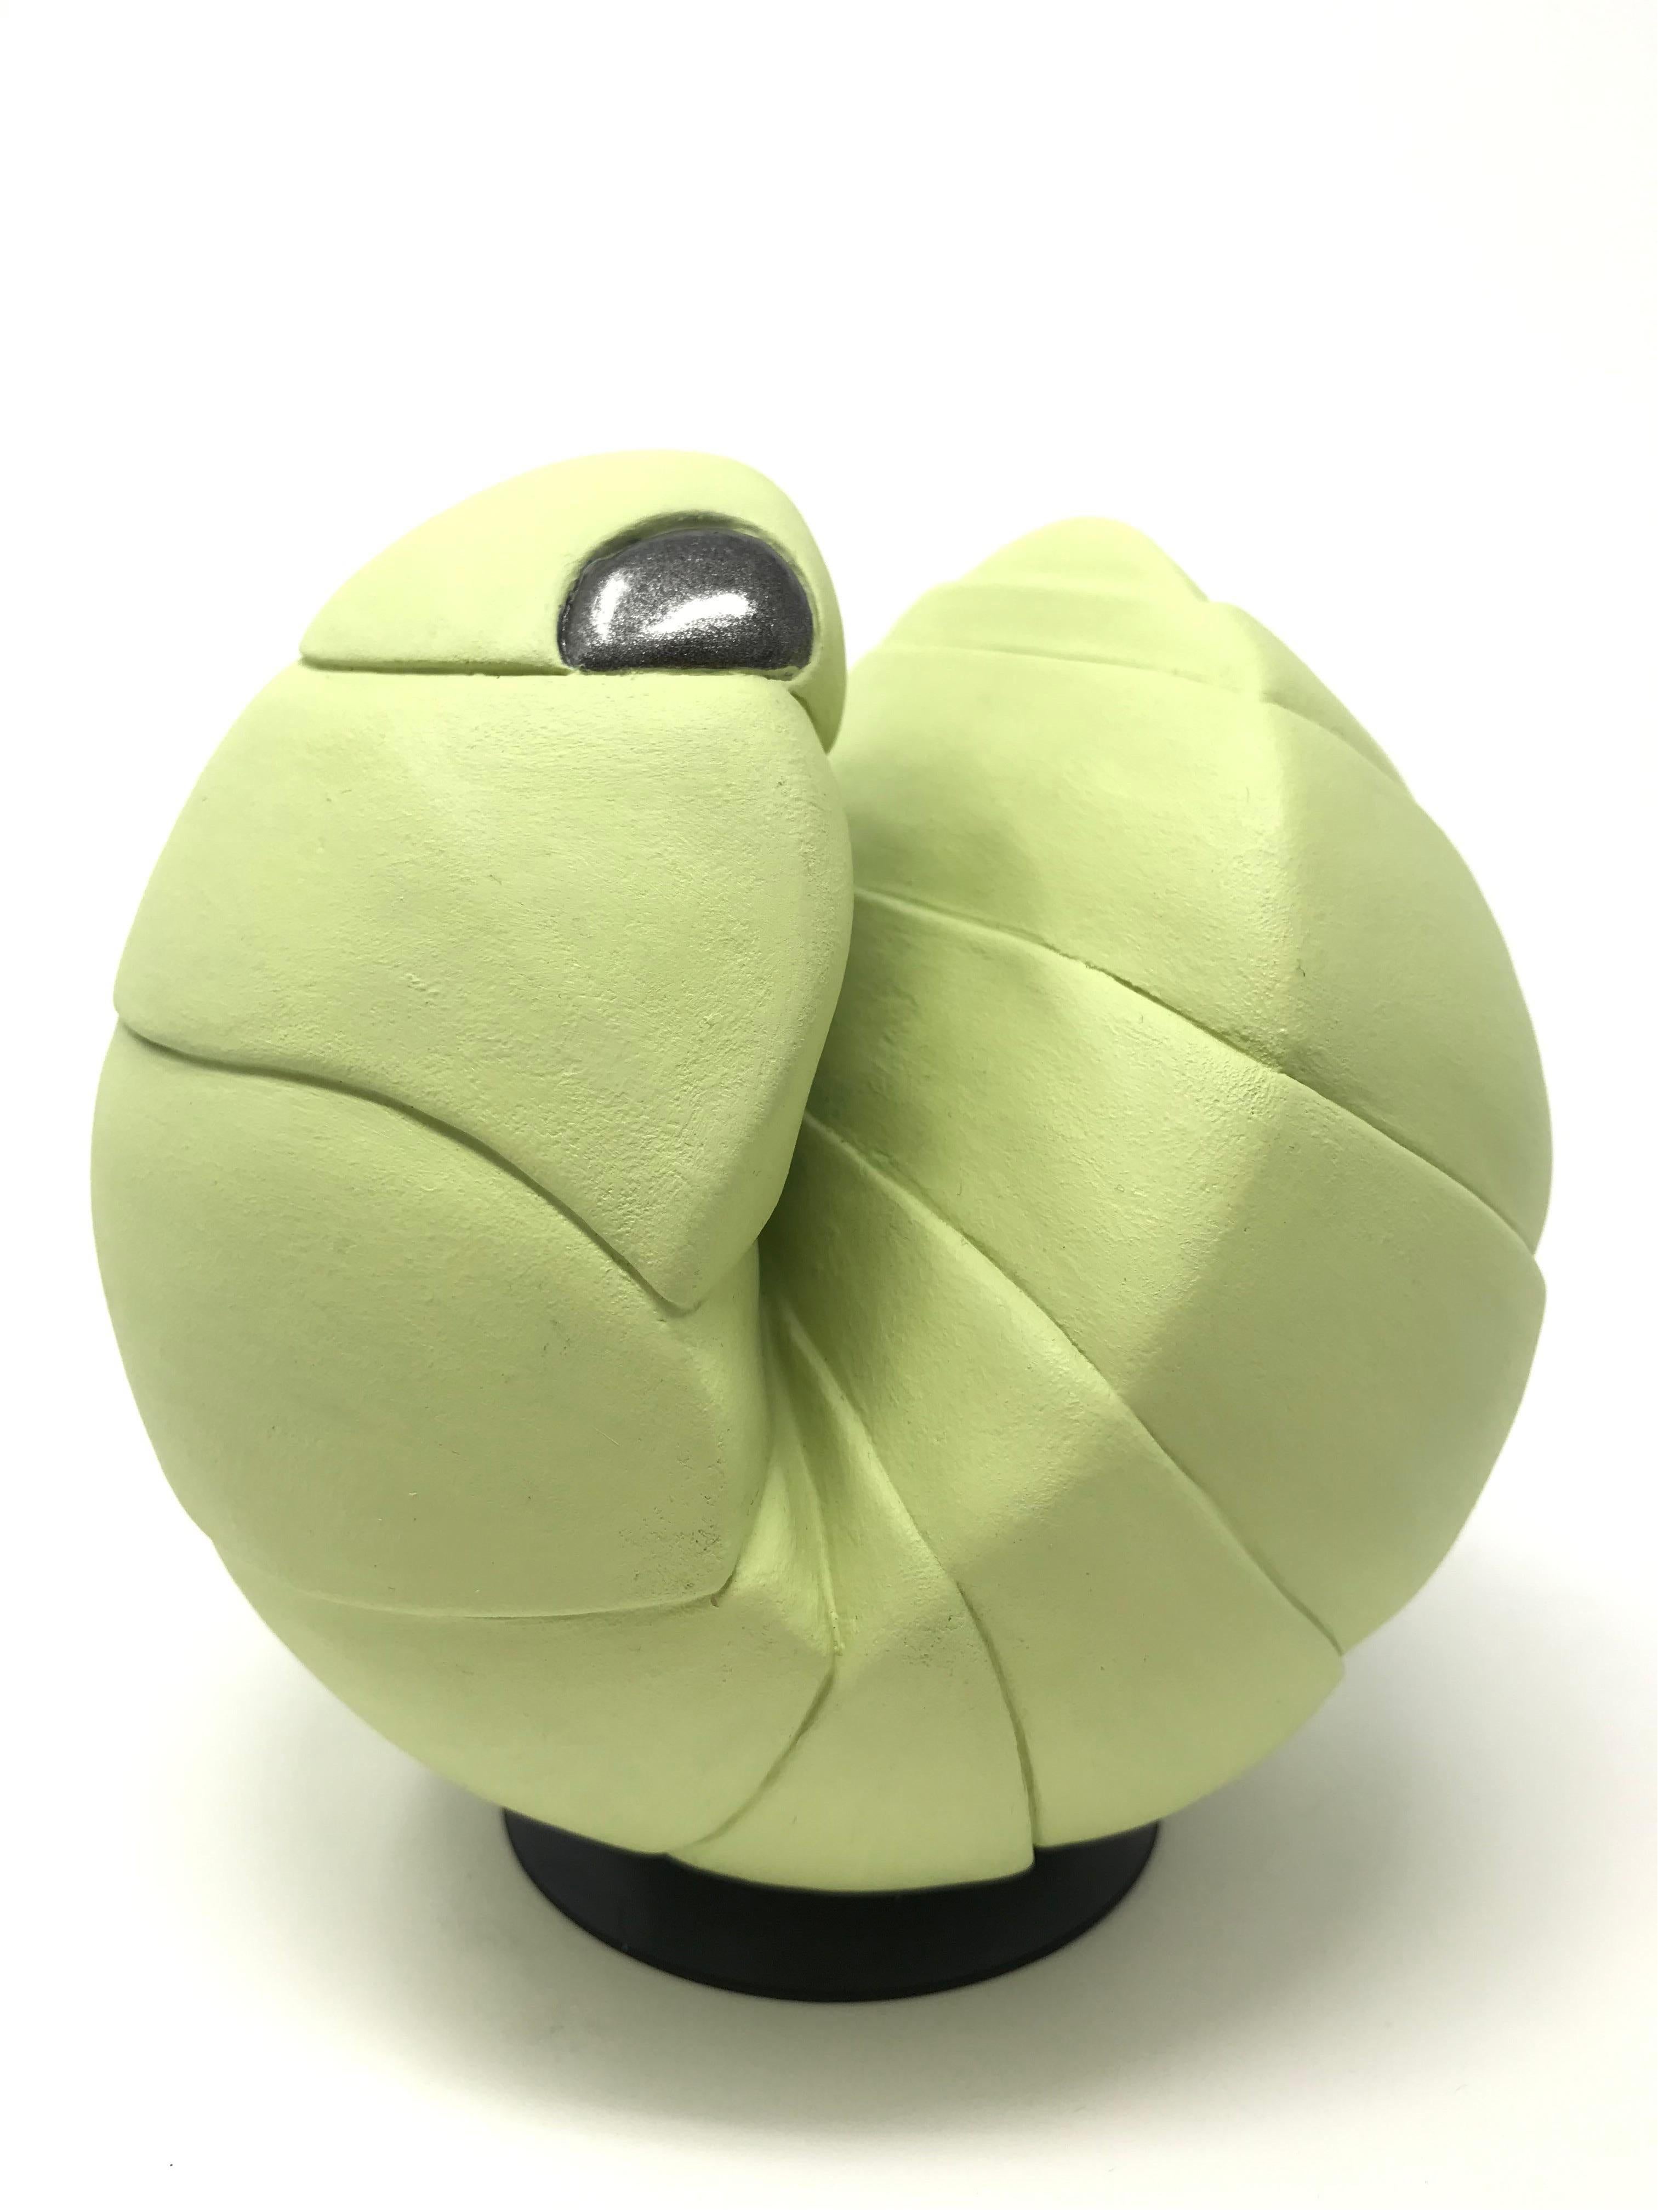 Die weiche, grüne Keramik „Roly Poly“ von Bethany Krull